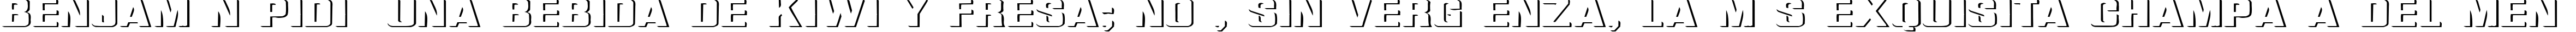 Пример написания шрифтом Relief Grotesk Extended текста на испанском